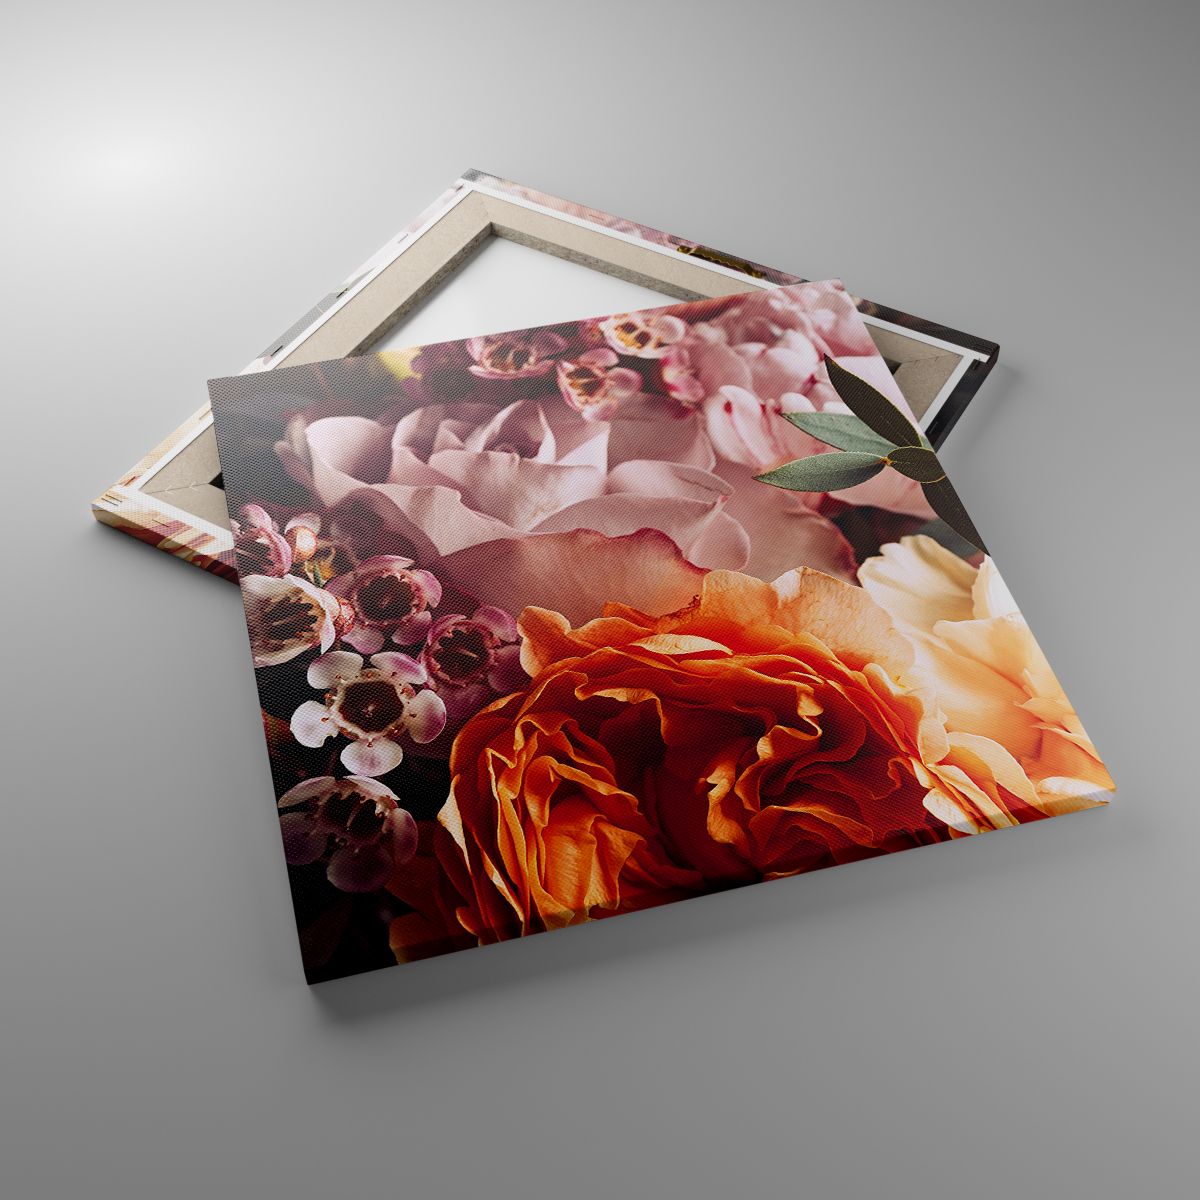 Leinwandbild Blumen, Leinwandbild Blumenstrauß, Leinwandbild Rose, Leinwandbild Garten, Leinwandbild Floristen